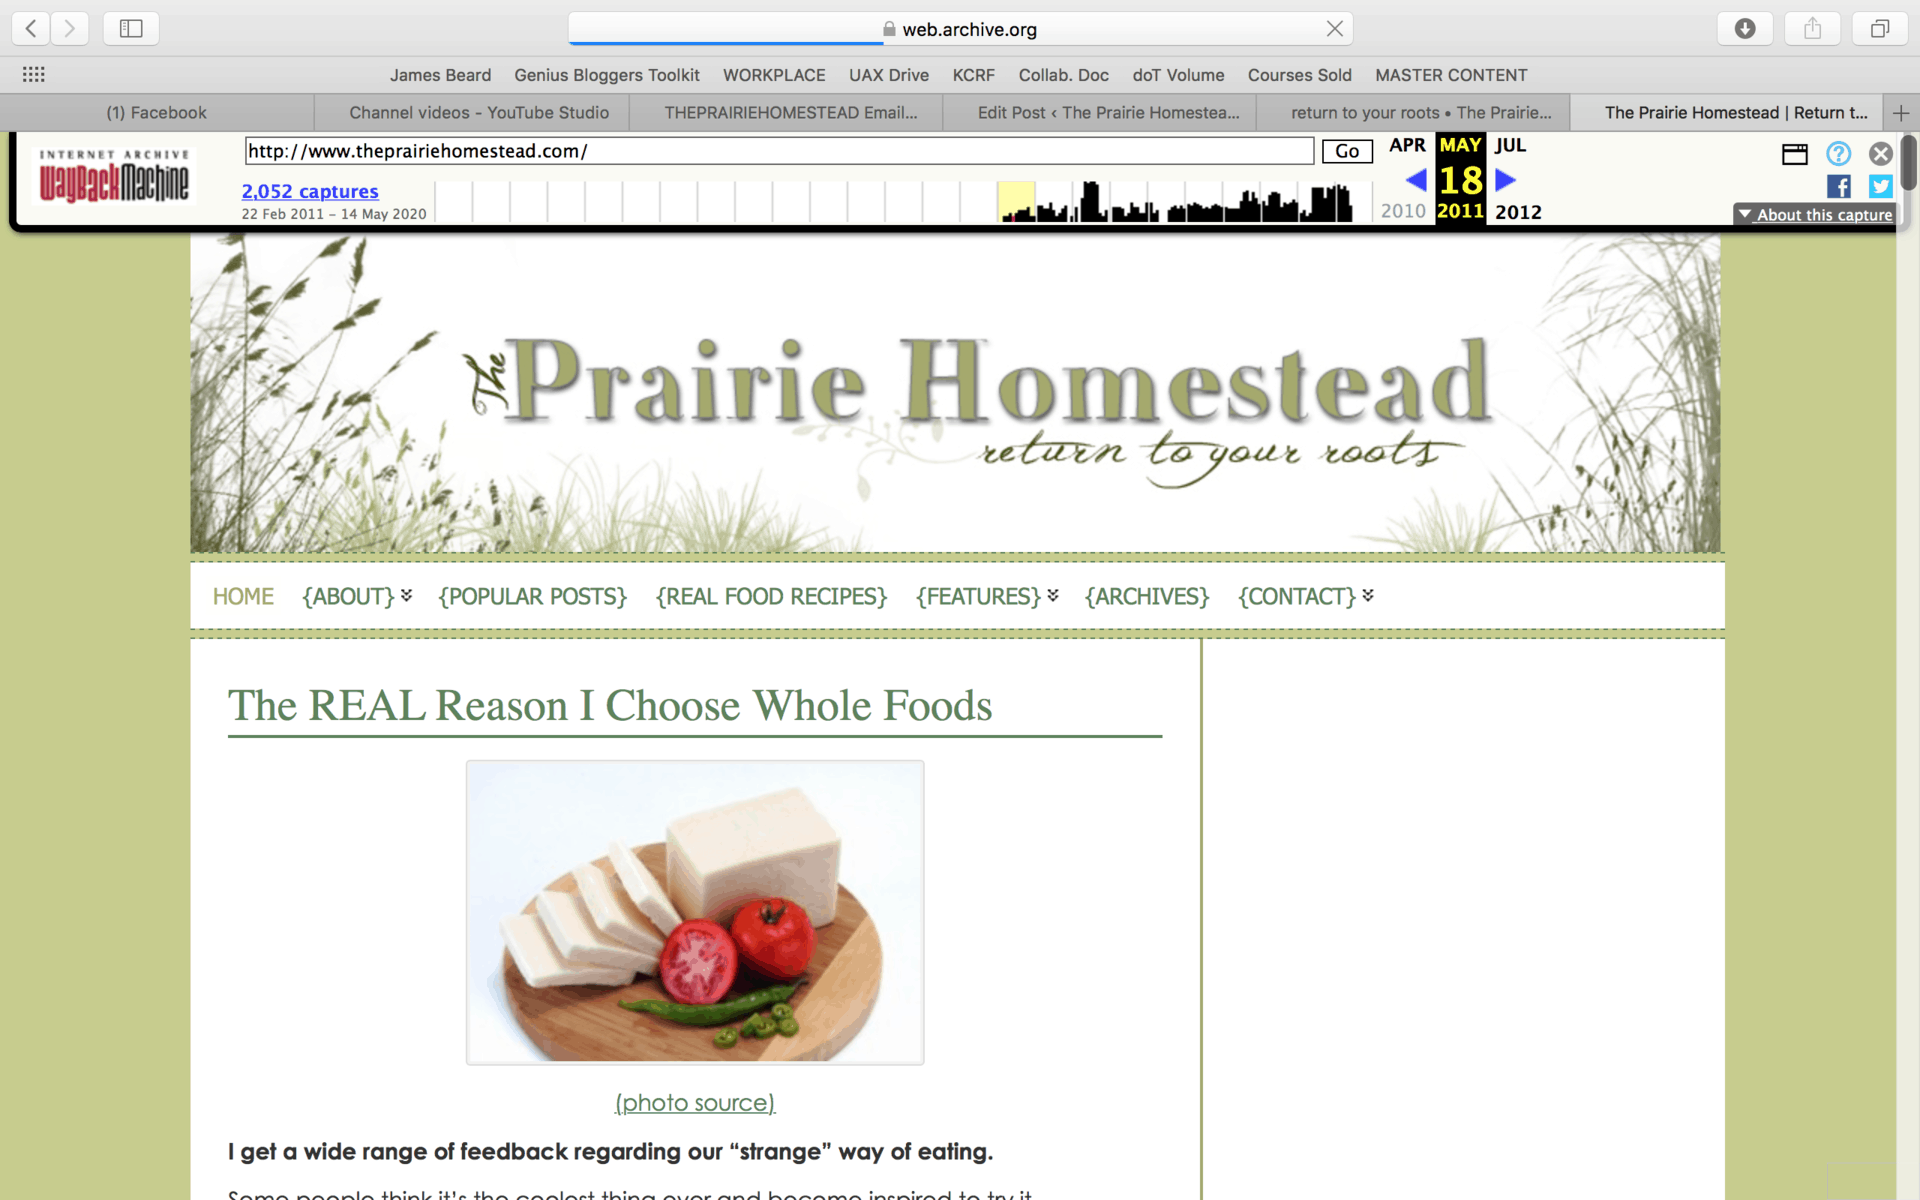 The prairie homestead circa 2011